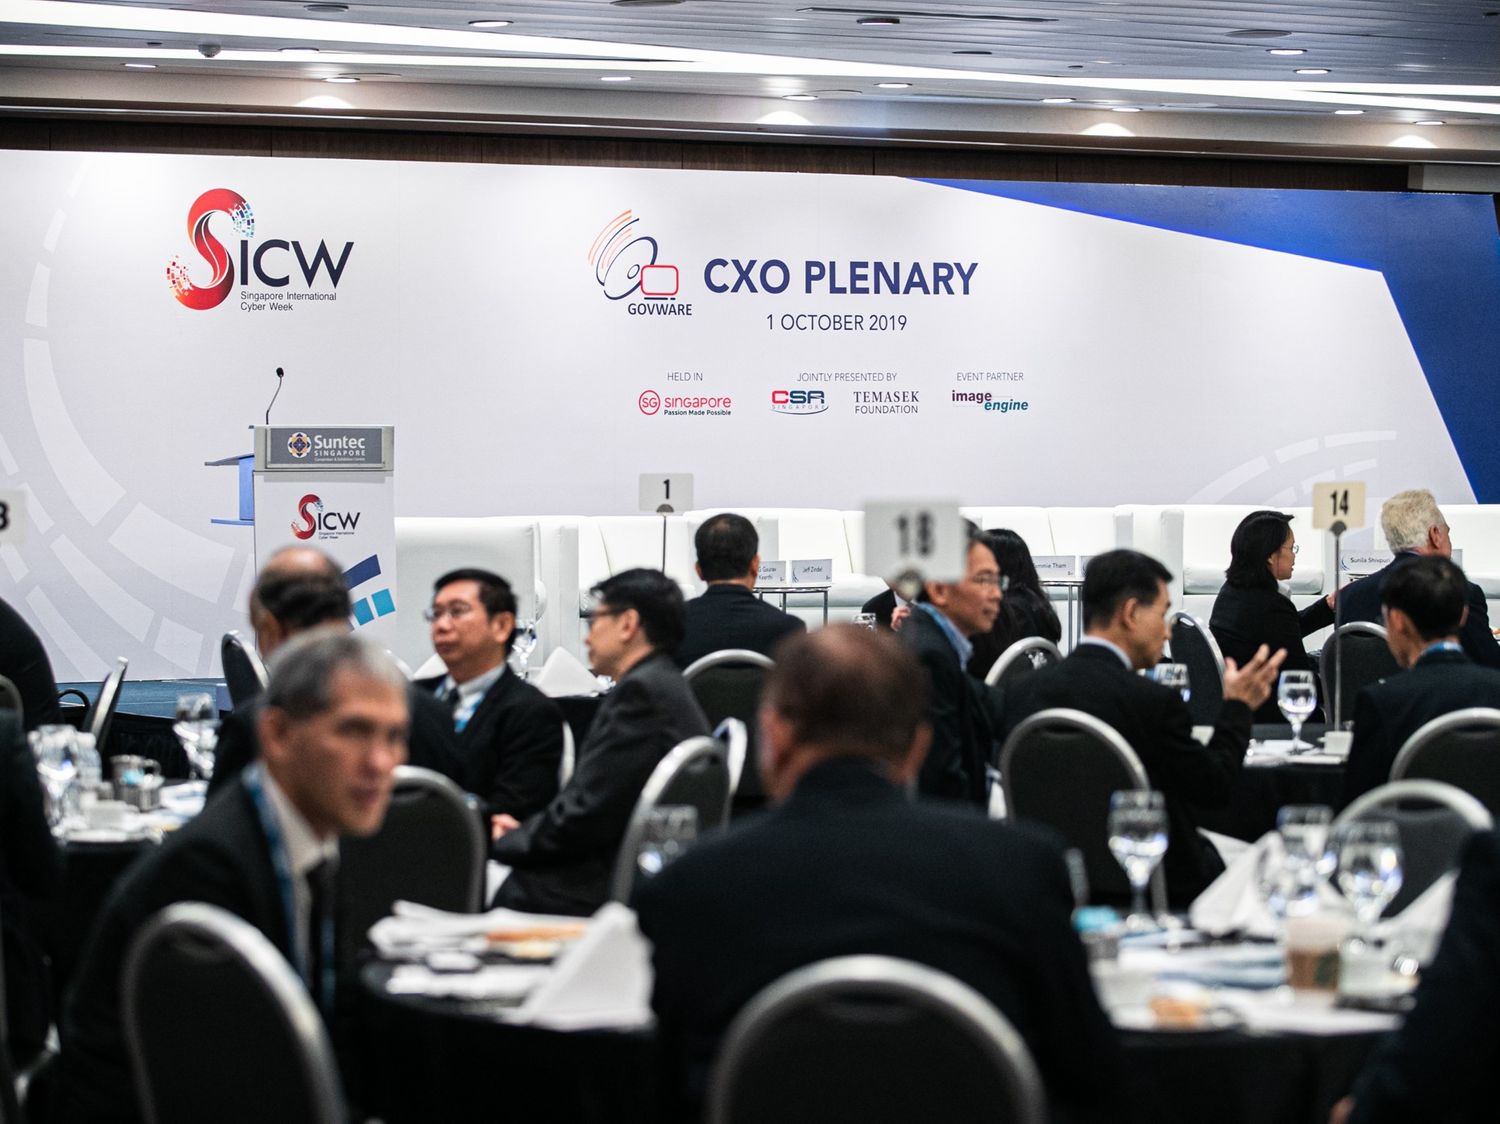 CXO Plenary (By Invitation Only)